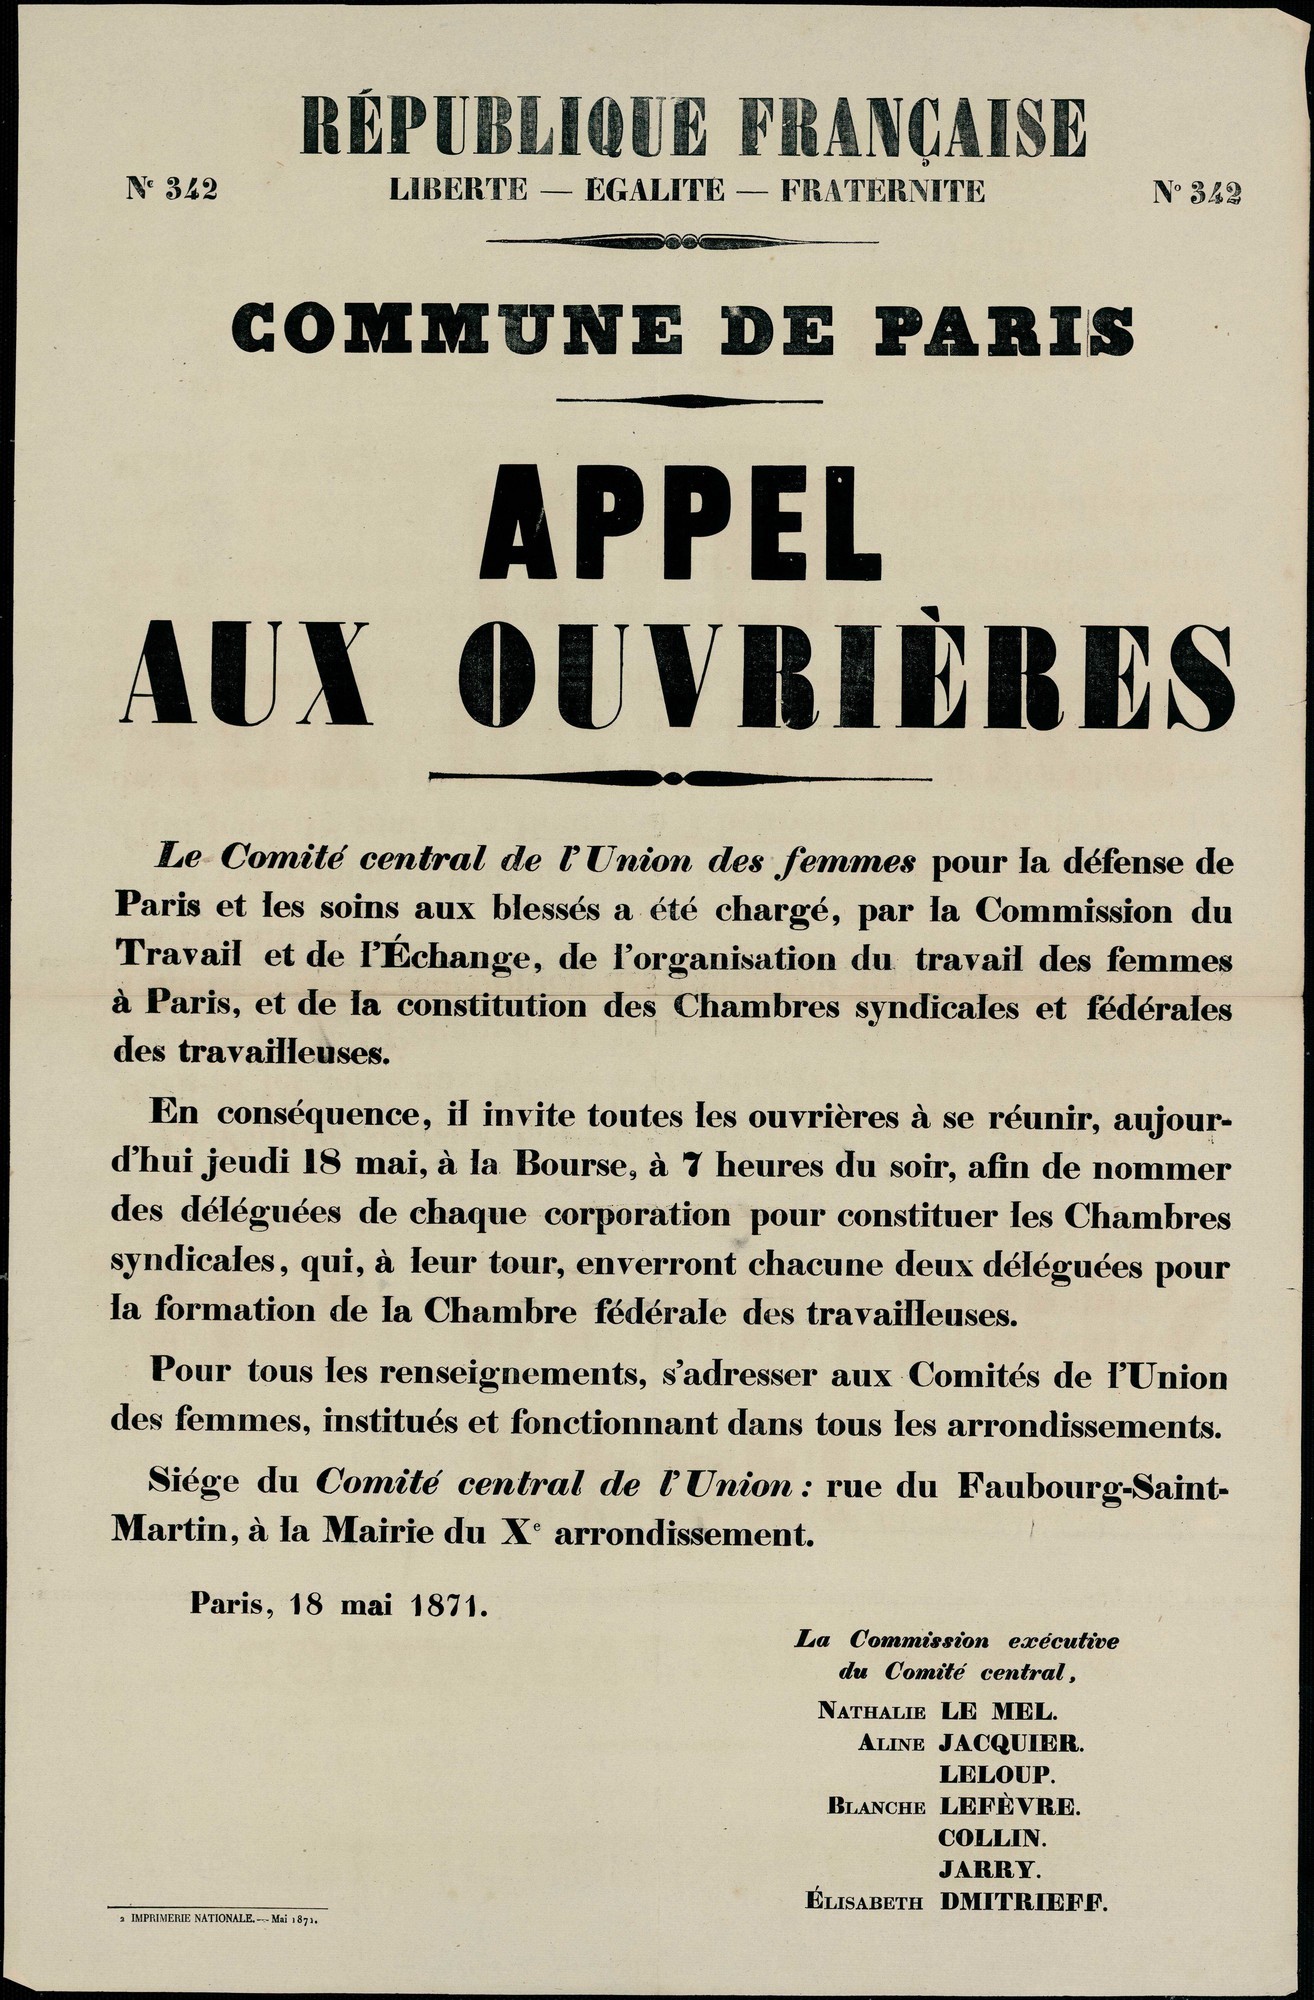 Affiche de la Commune de Paris N°342 du 18 mai 1871 - Appel aux ouvrières (source : La Contemporaine – Nanterre / argonnaute.parisnanterre.fr)